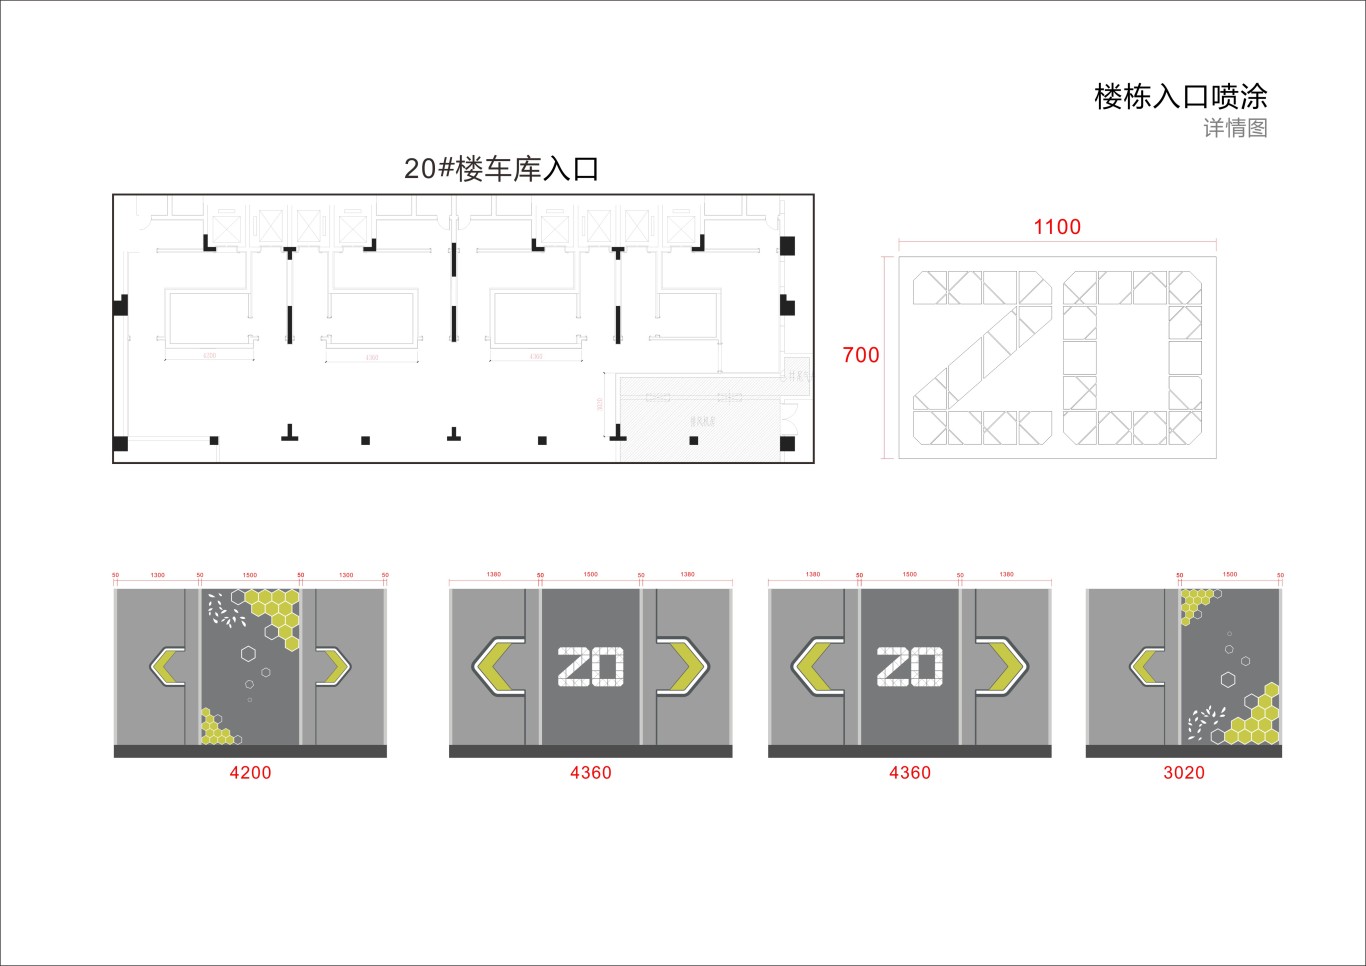 金茂地产 杭州项目地库美化设计图29